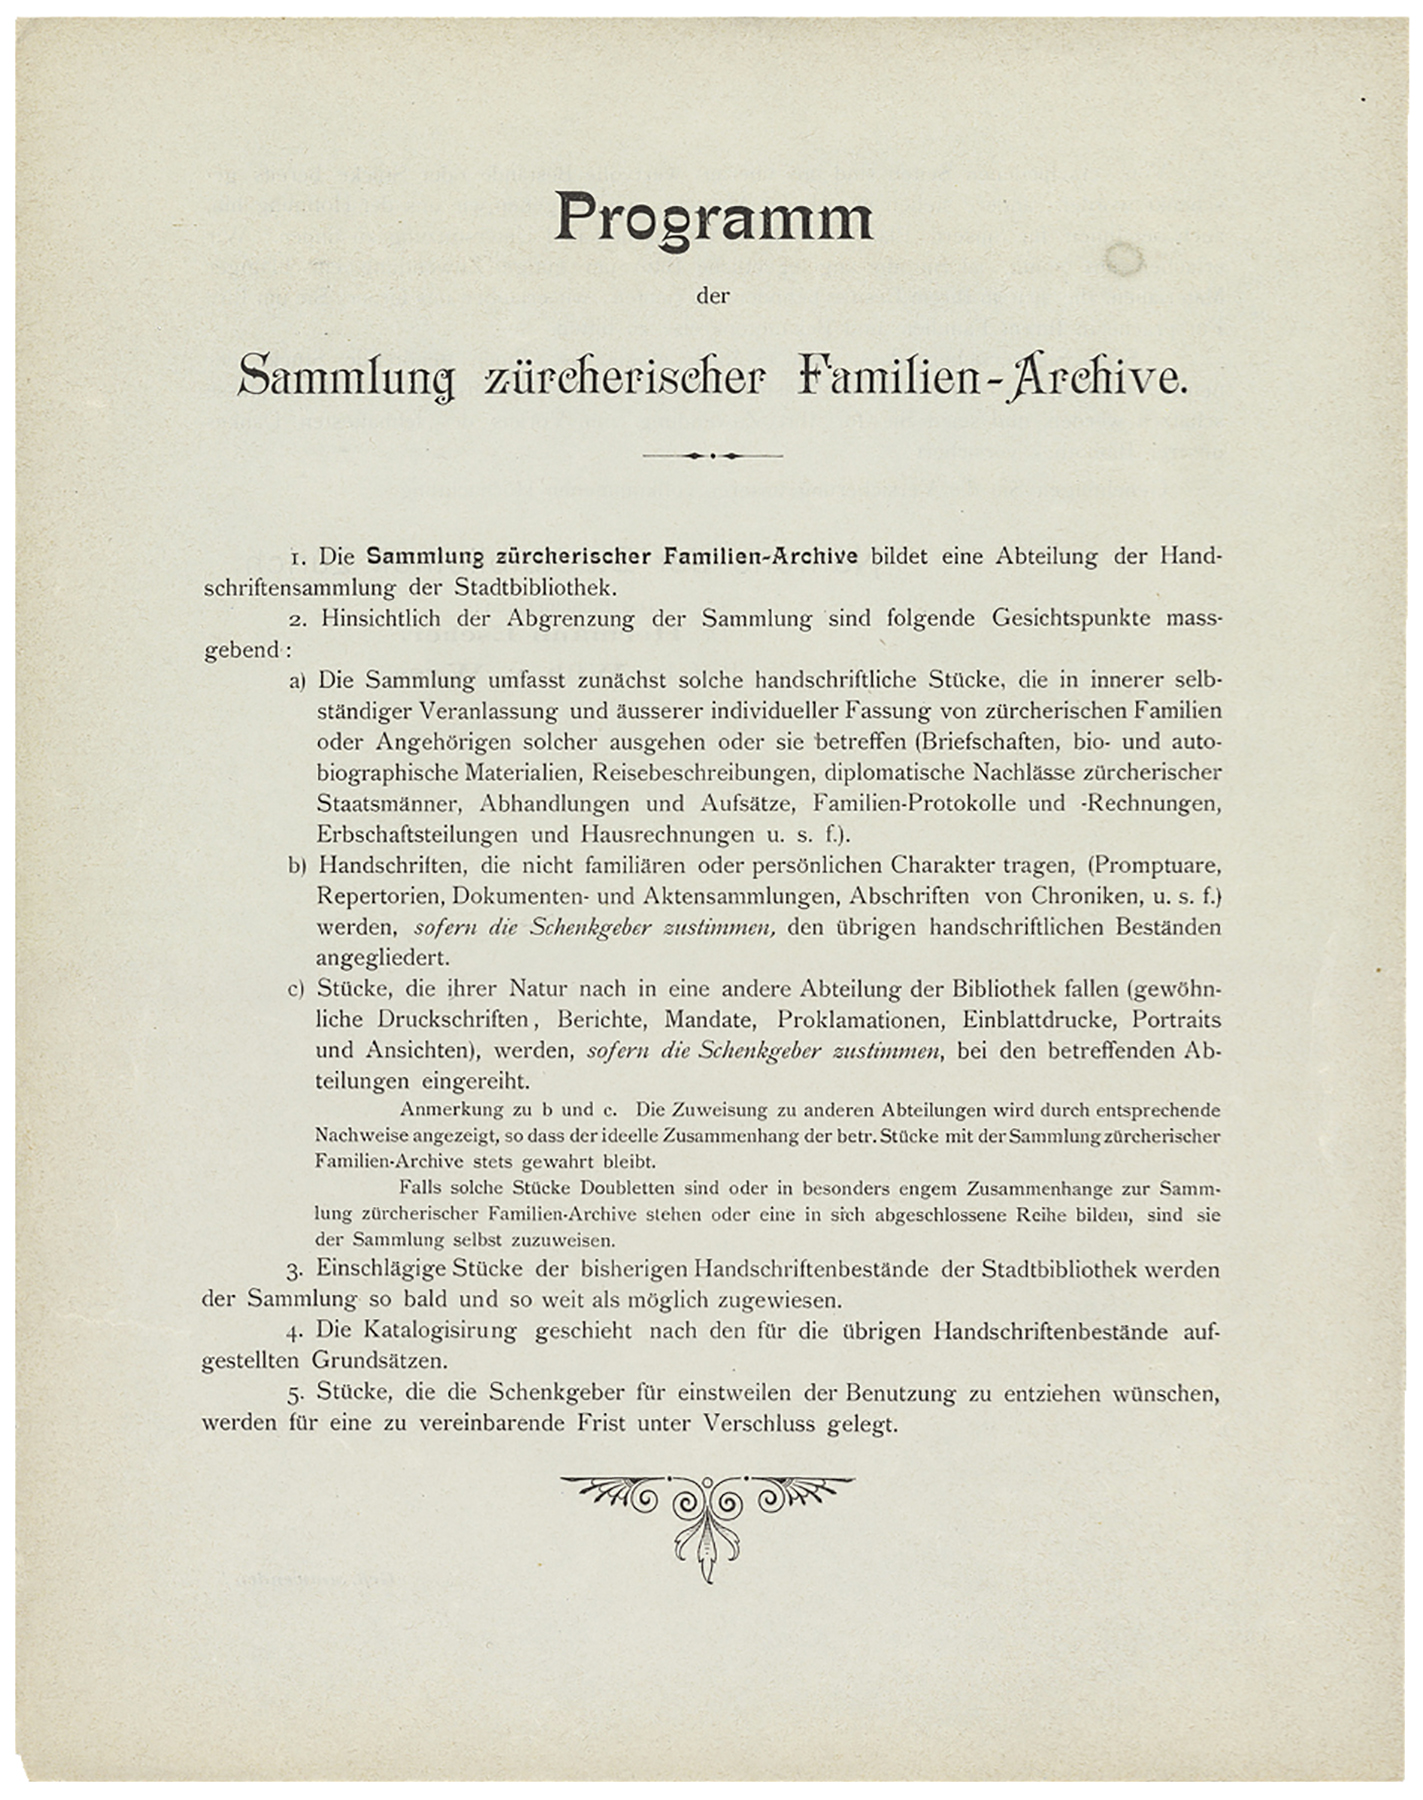 Programm für die Sammlung der Familienarchive in der Stadtbibliothek, November 1900. <br>(Bild: ZB Zürich, Arch St. 133)